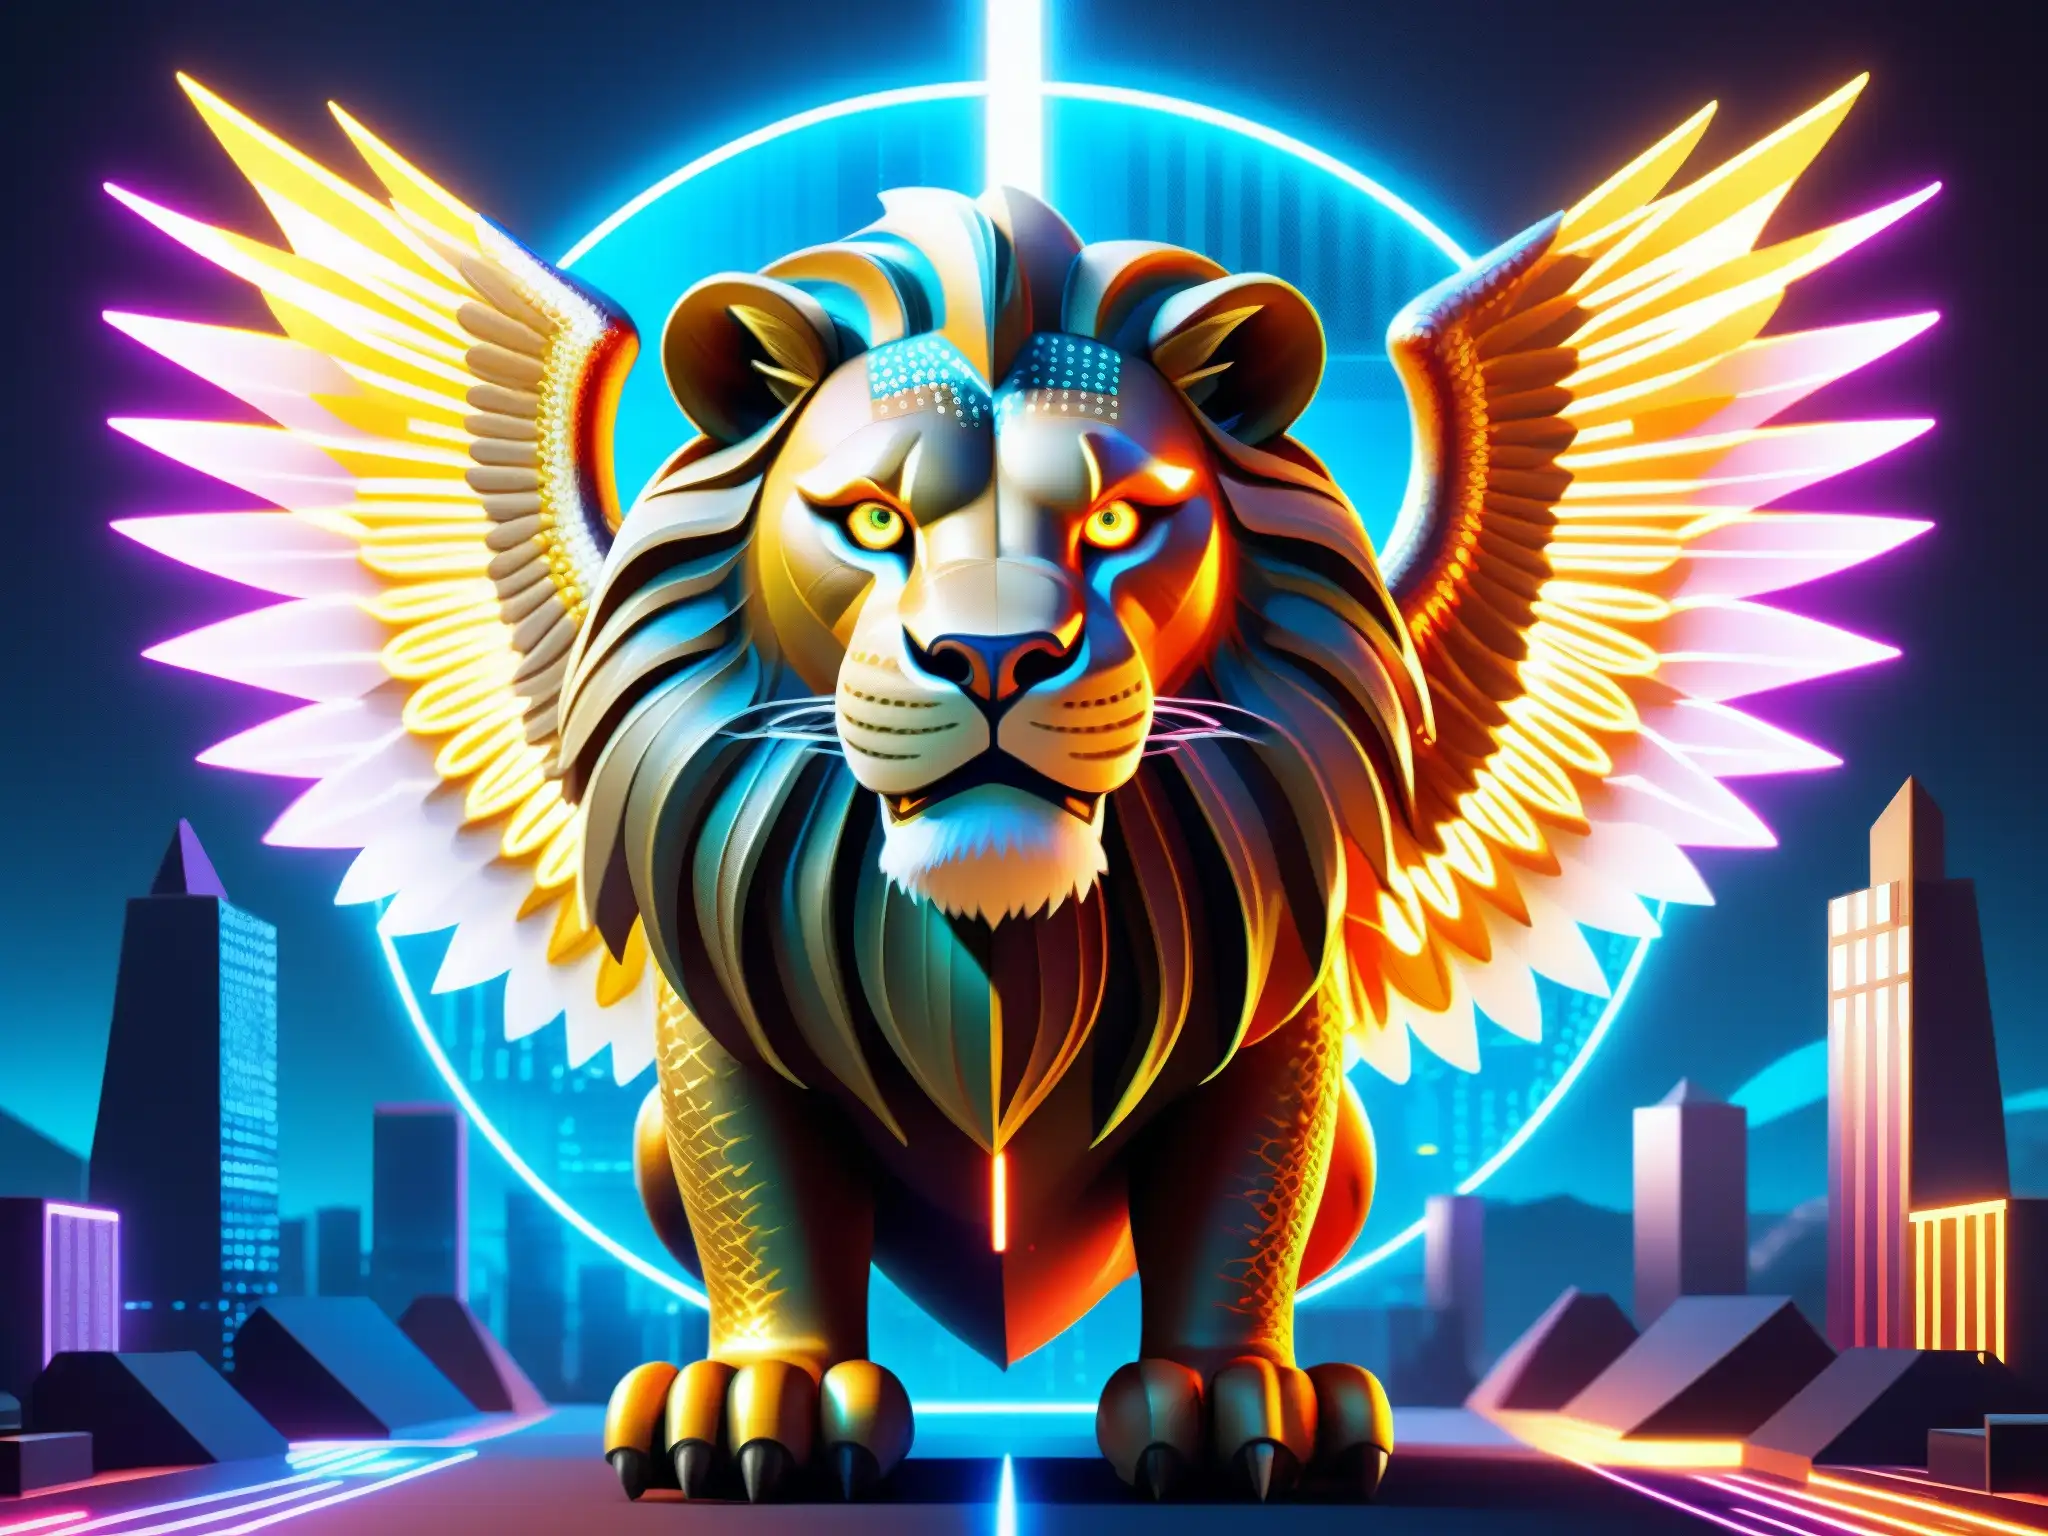 Un ser mitológico digital con cuerpo de dragón, cabeza de león, alas de águila y elementos tecnológicos